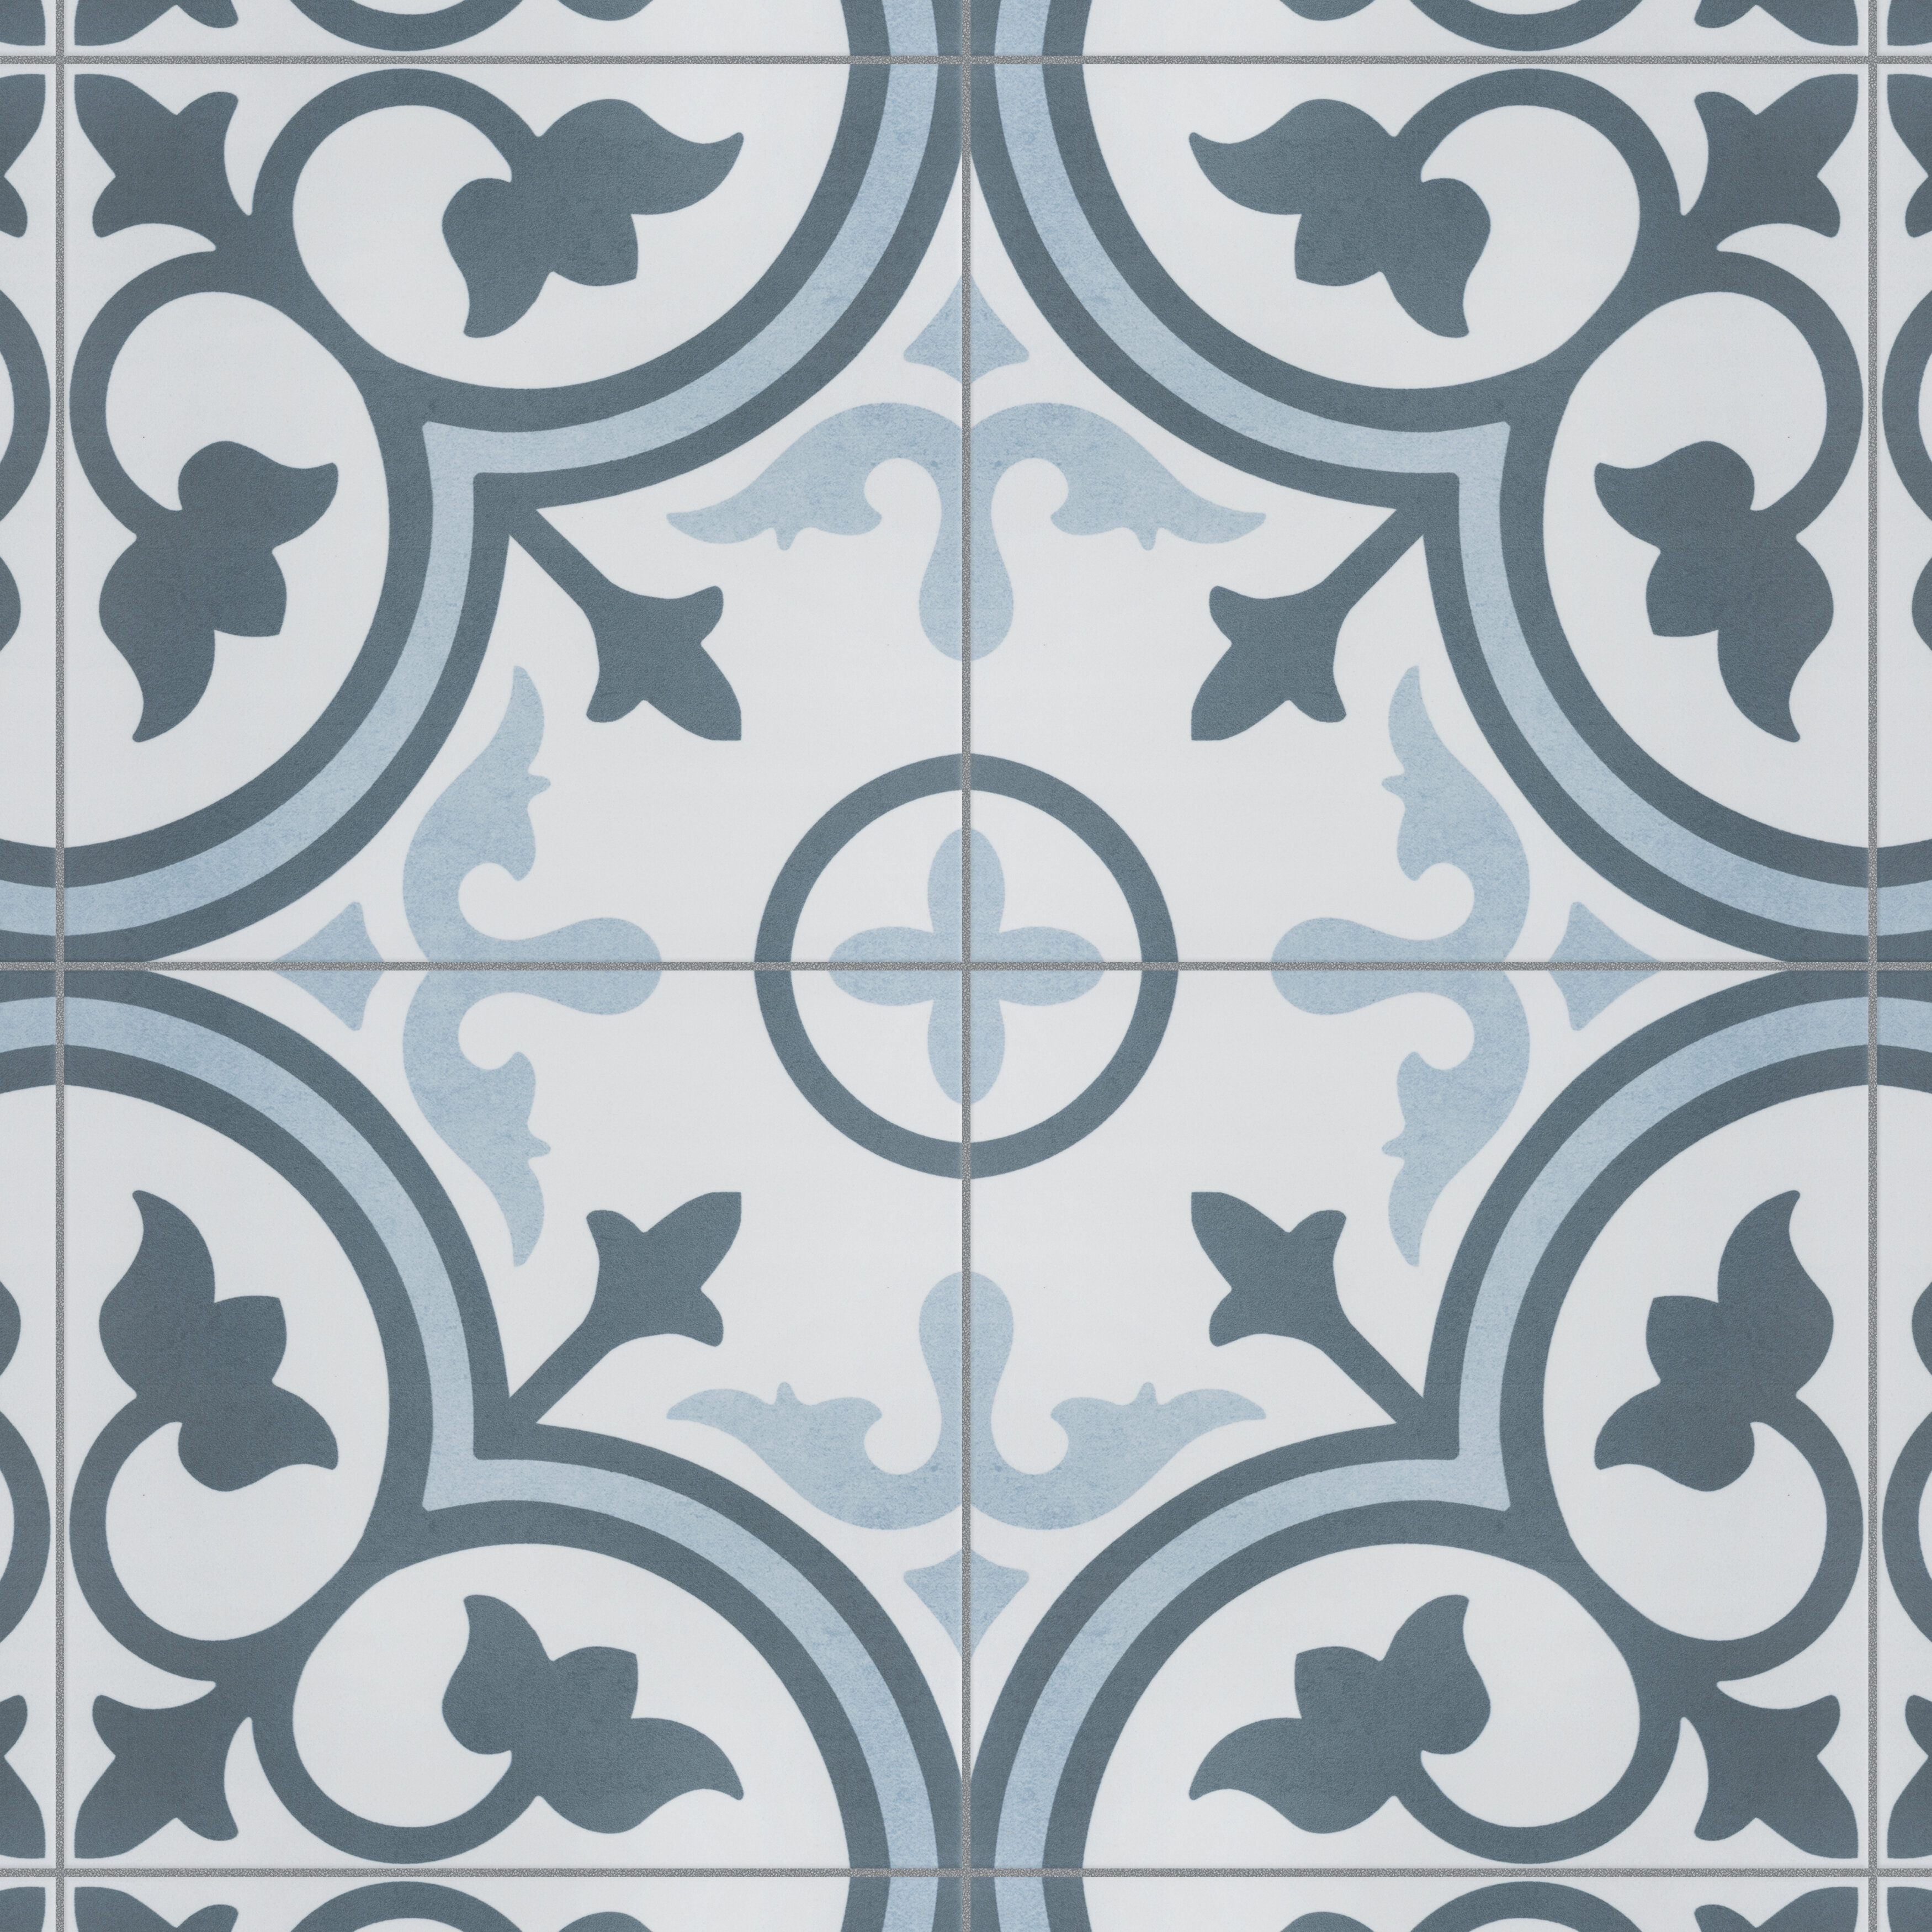 Elitetile Mora 12 X 12 Ceramic Field Wall Floor Tile Reviews Wayfair